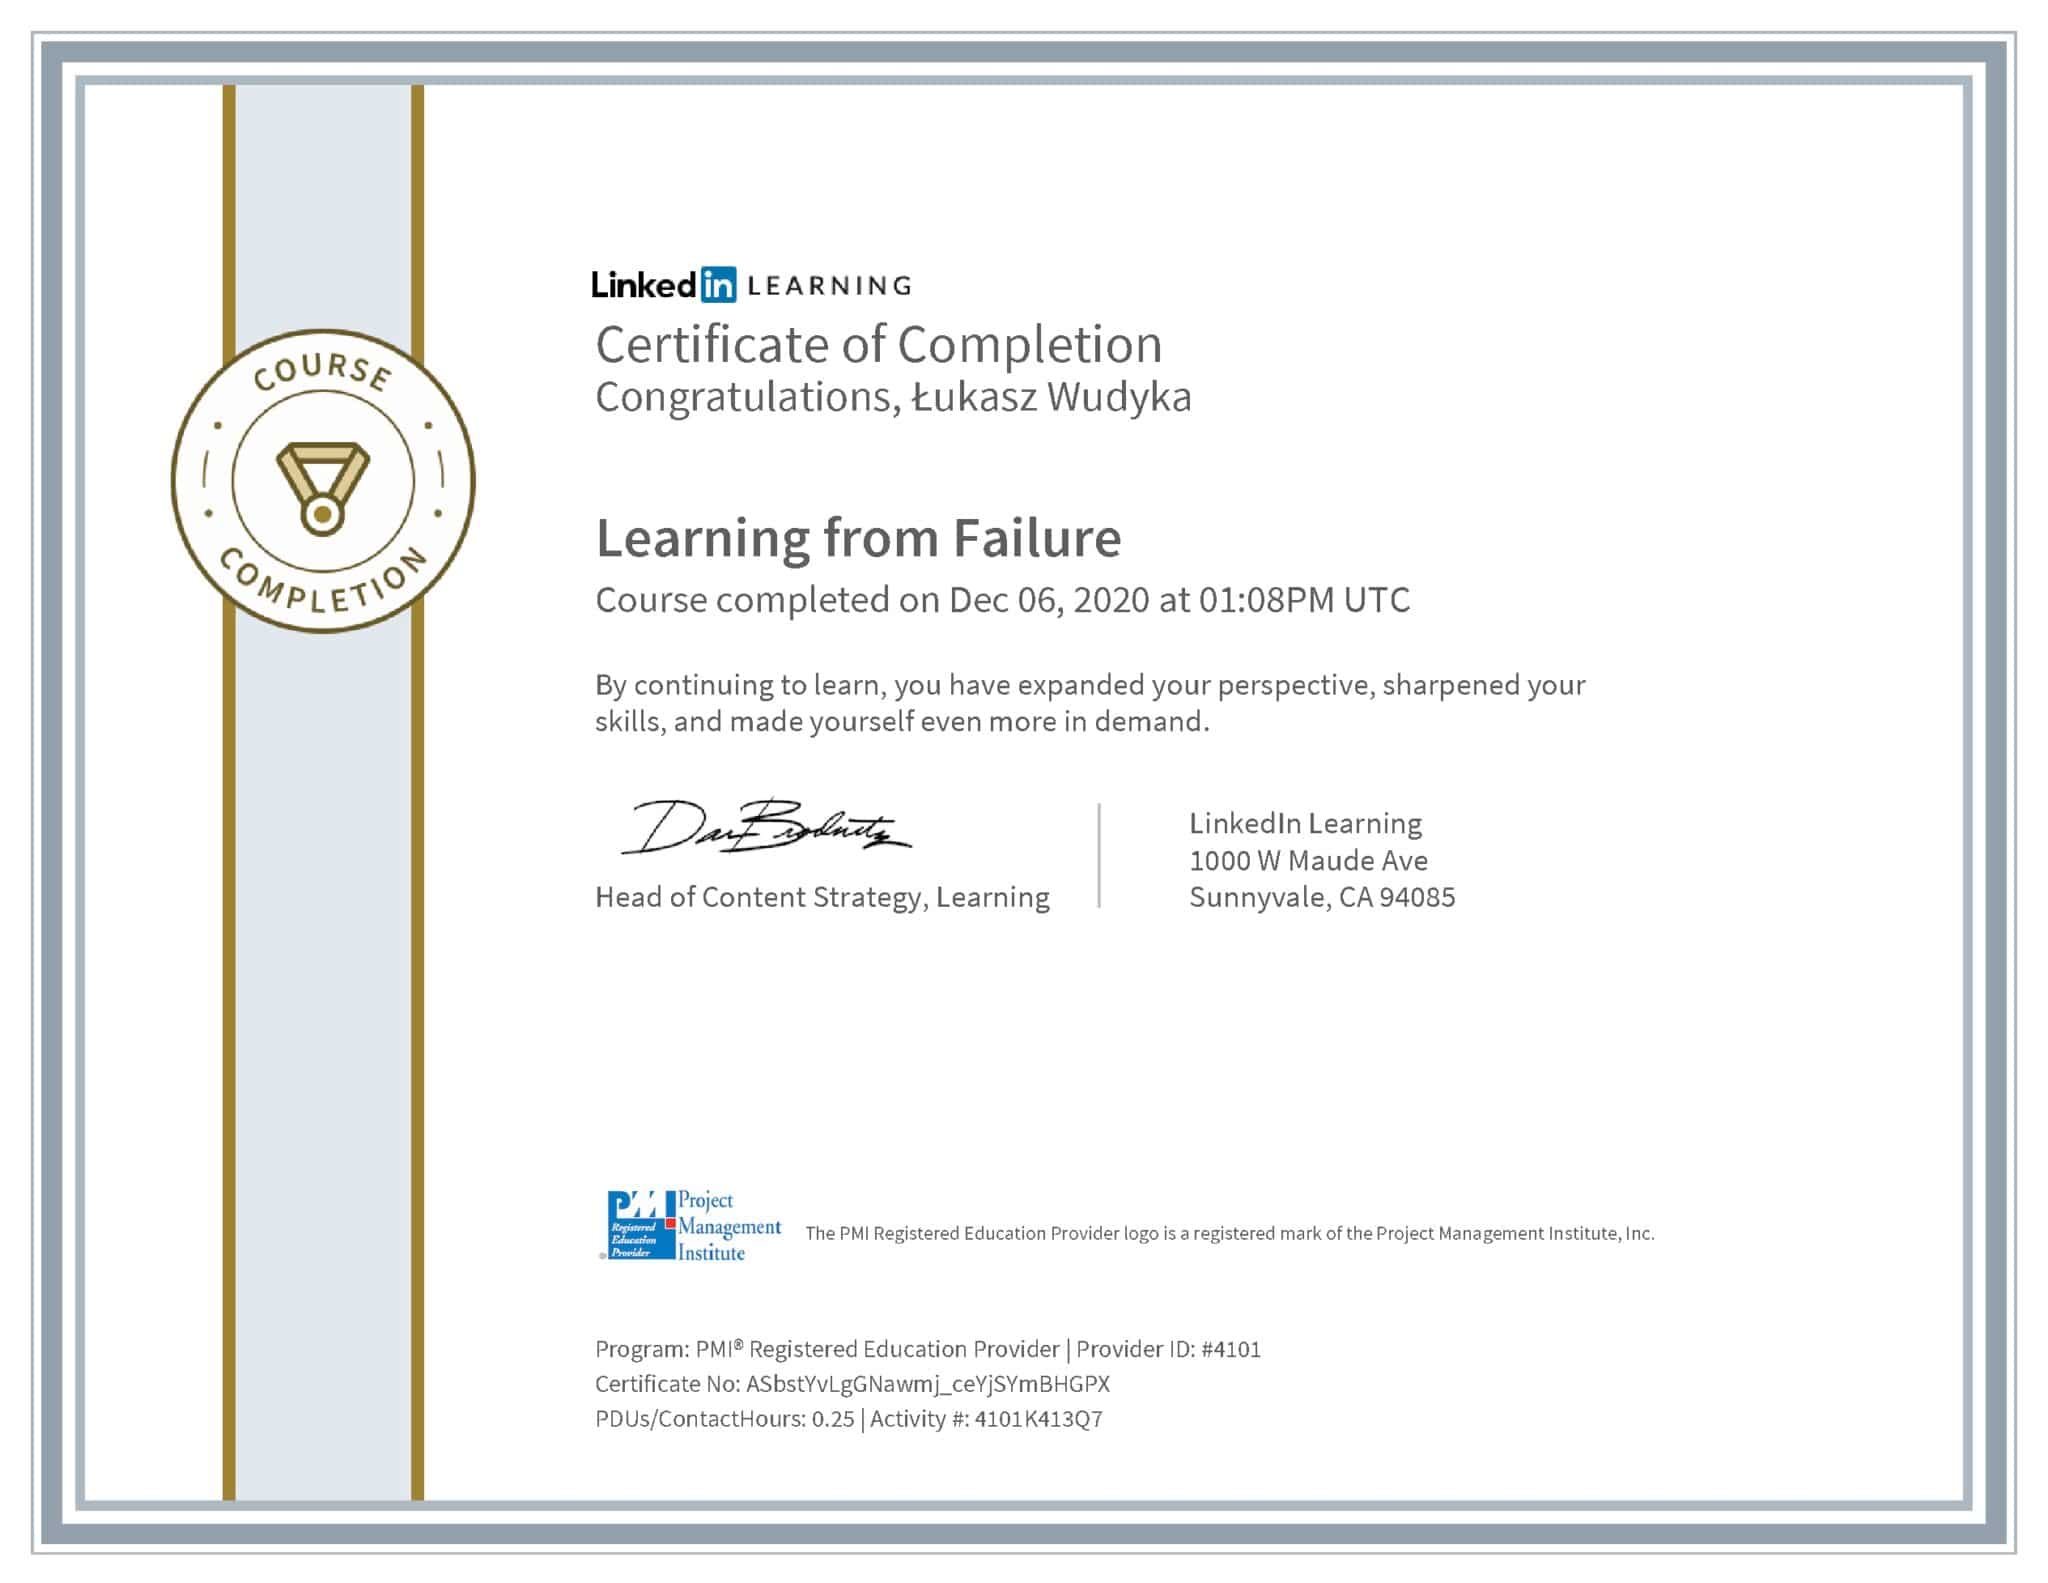 Łukasz Wudyka certyfikat LinkedIn Learning from Failure PMI